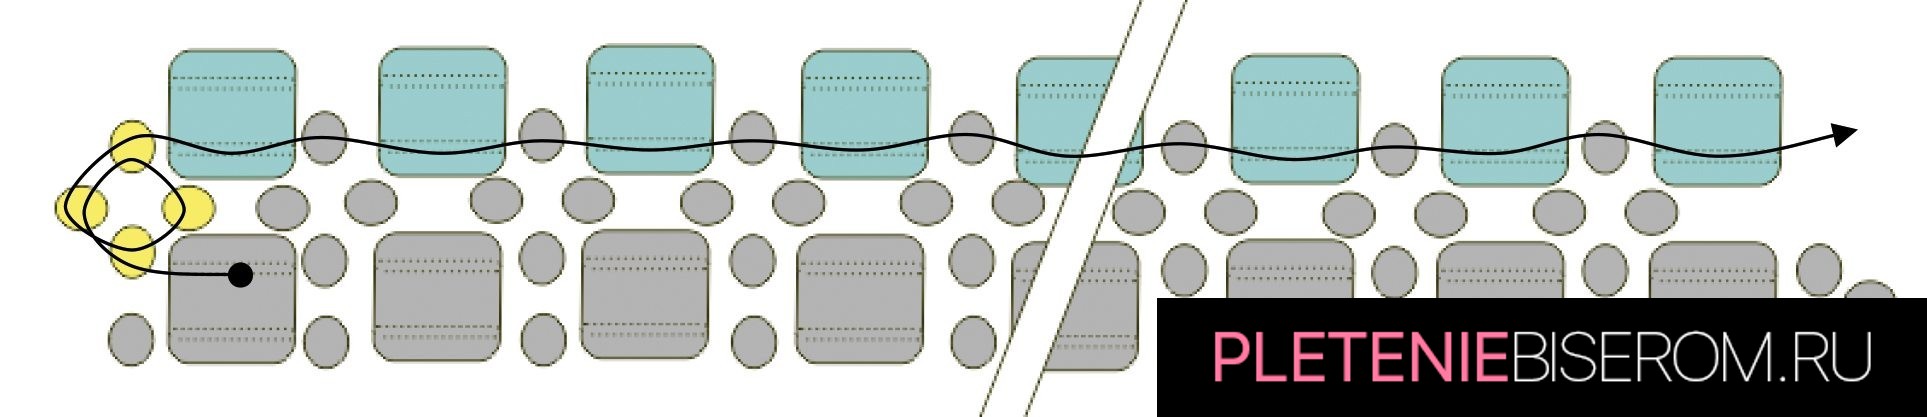 Схема плетения изящного браслета из бисера 3